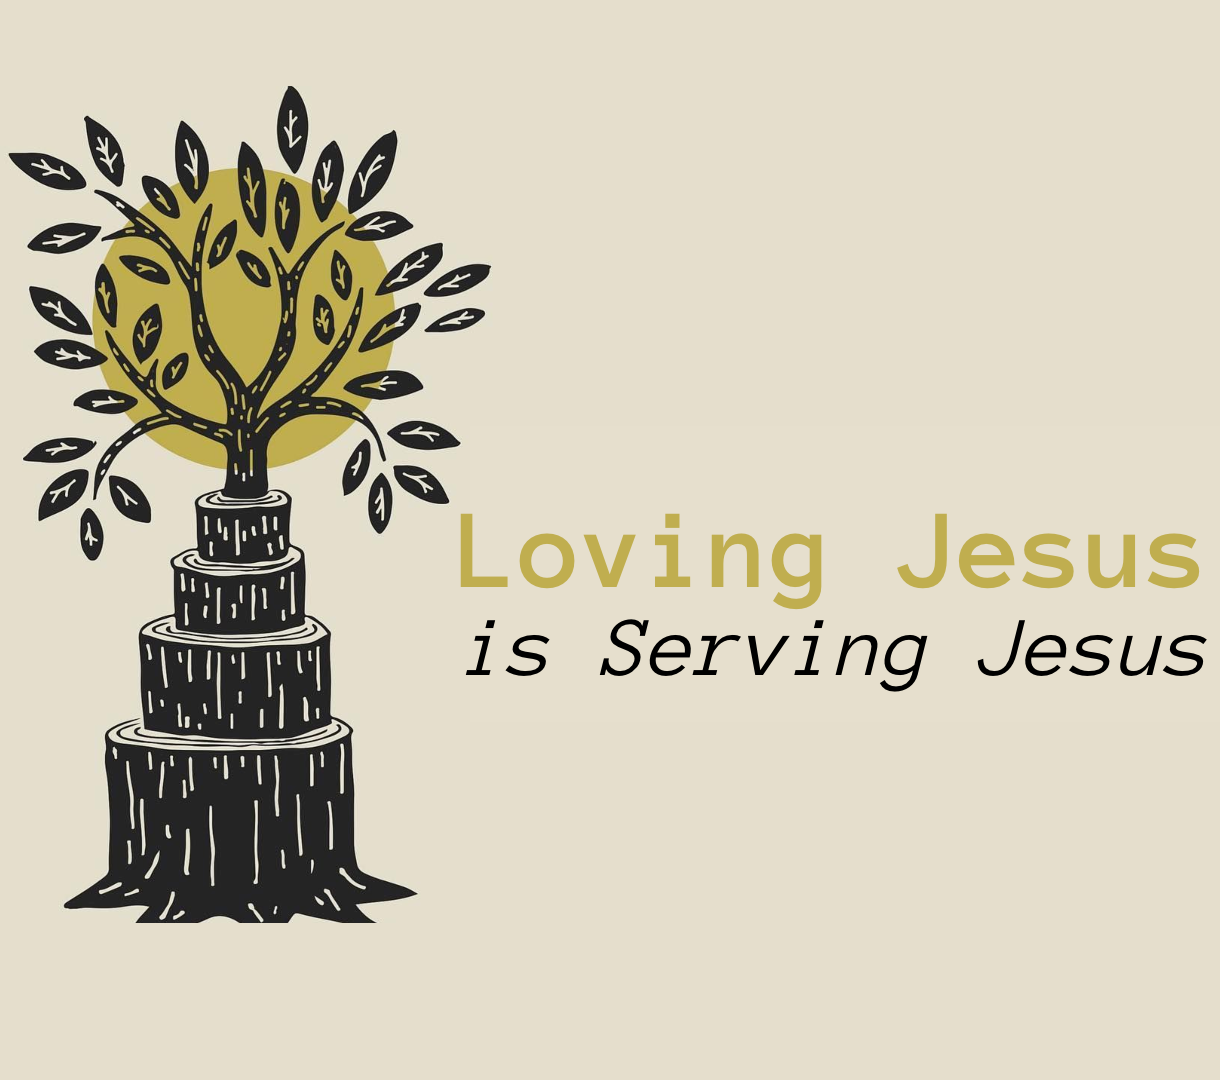 Wade Mikels - "Loving Jesus is Serving Jesus"